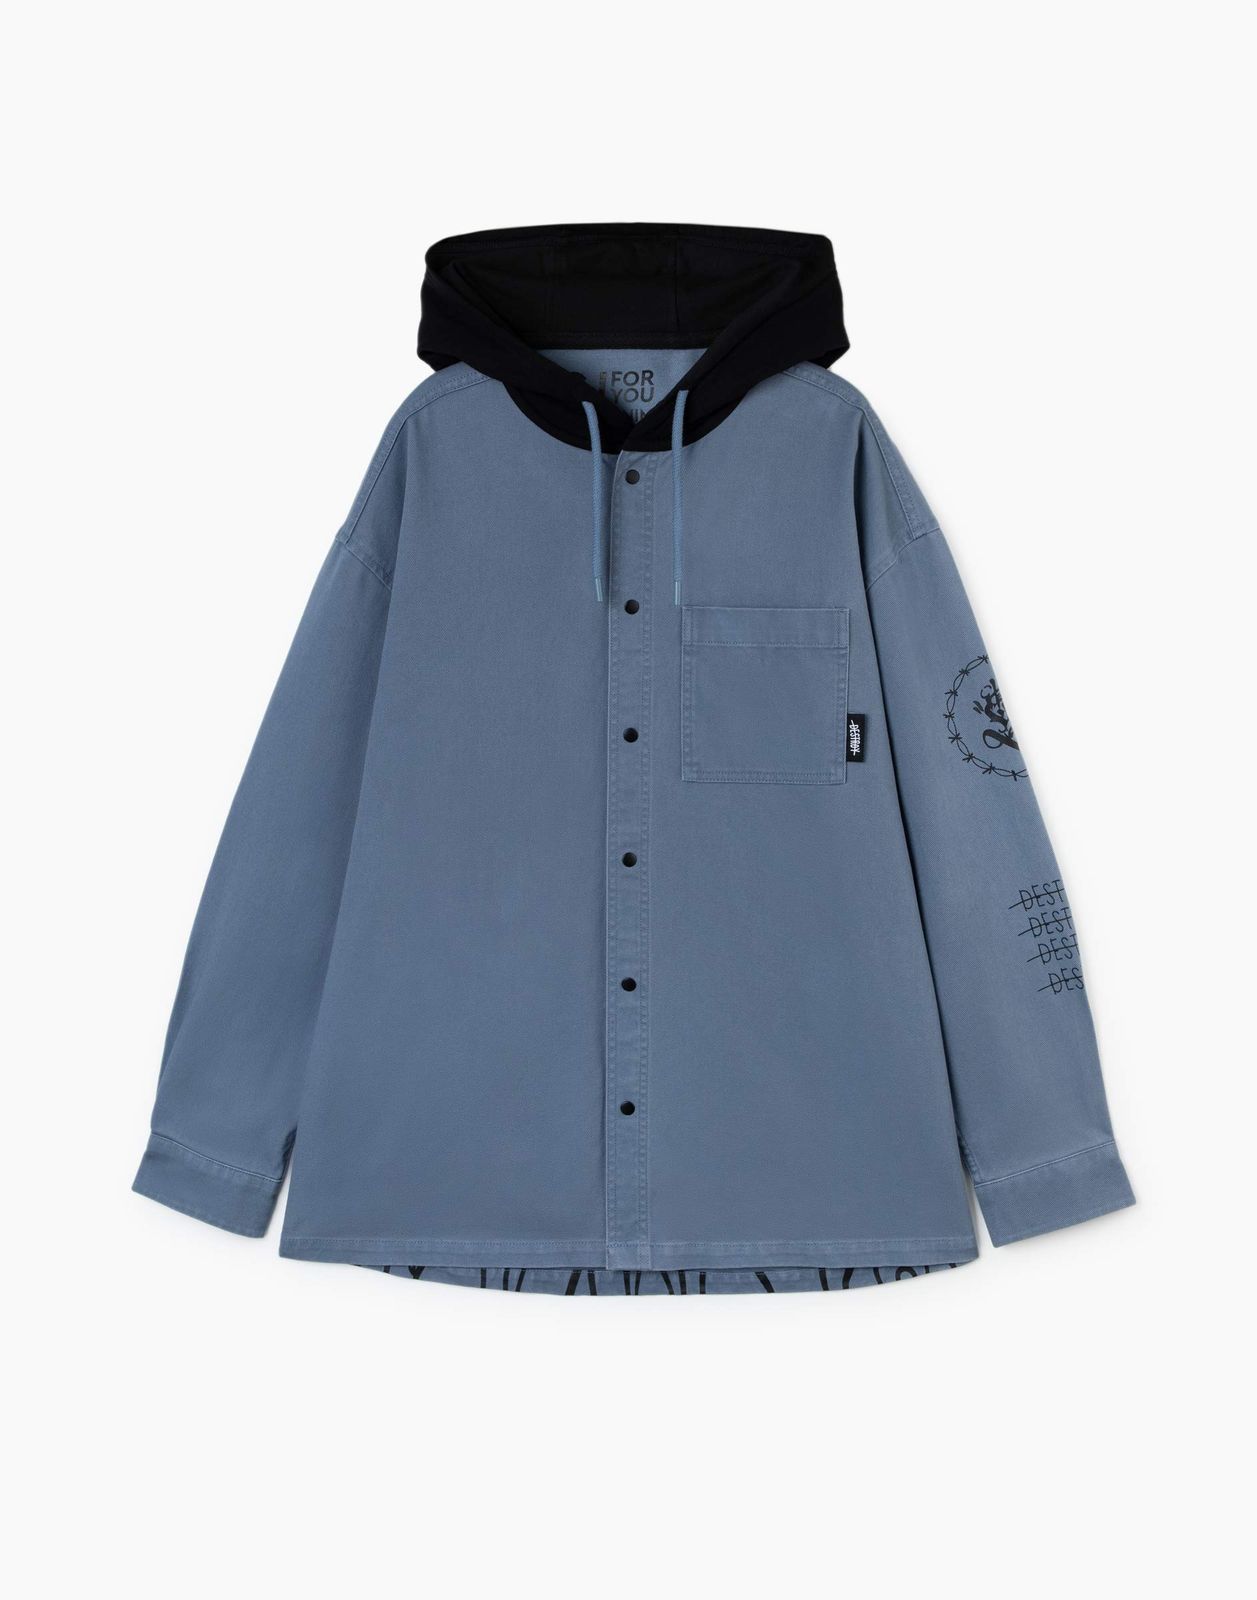 Джинсовый жакет (куртка) Gloria Jeans BJC002489 синий/серый 8-10л/140 для мальчика